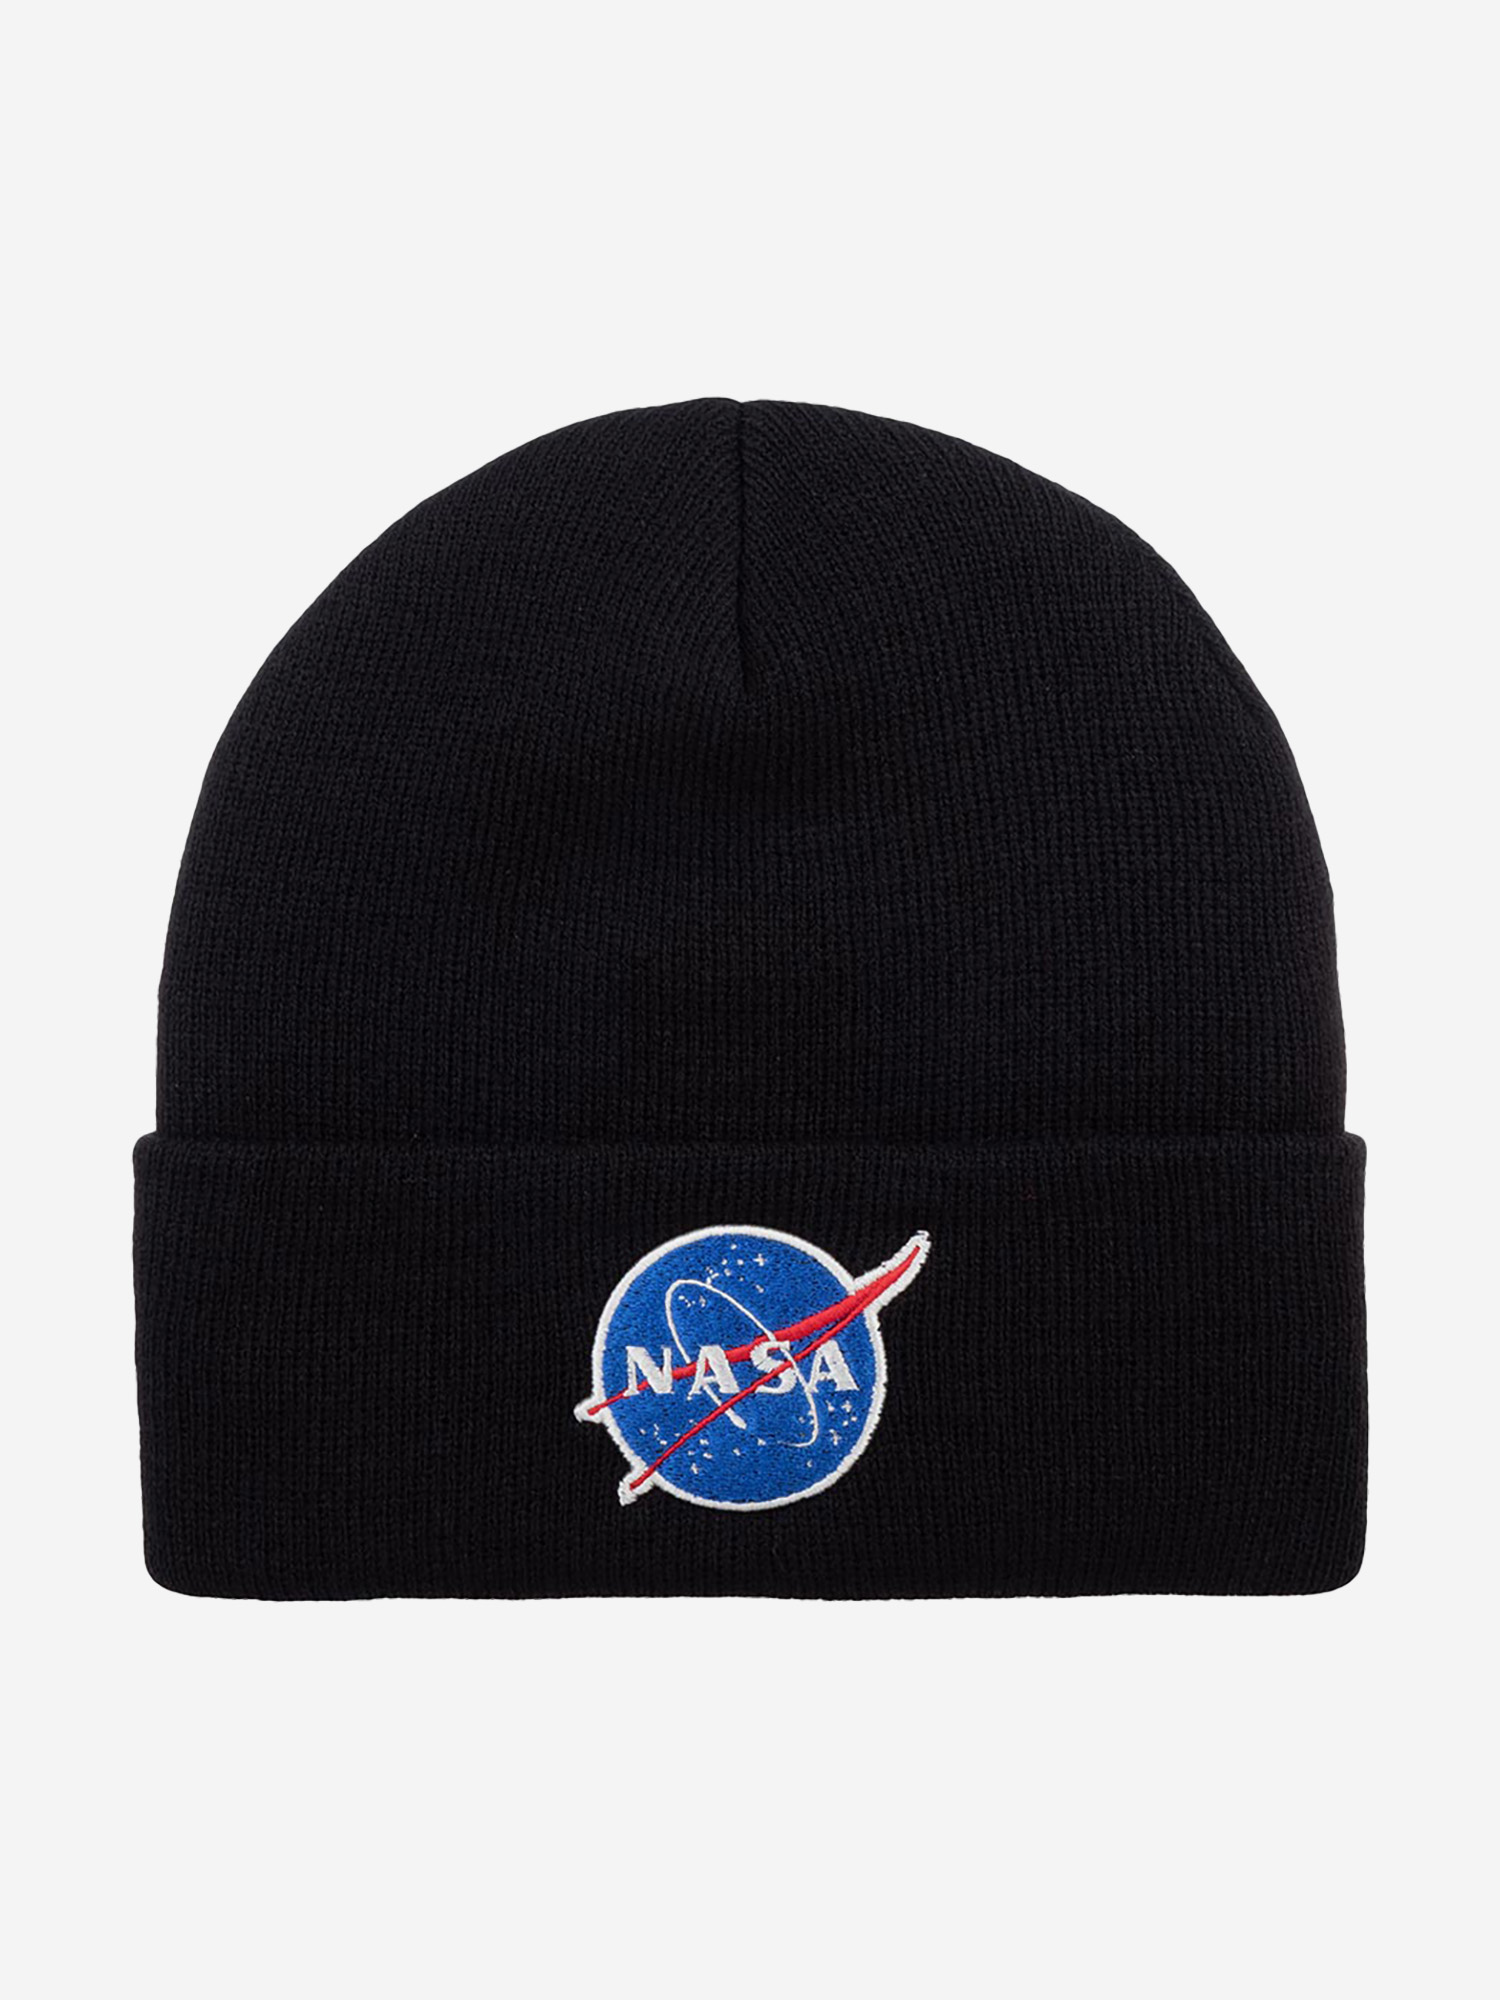 Шапка с отворотом AMERICAN NEEDLE 21019A-NASA NASA Cuffed Knit (черный), Черный бейсболки cl nasa 1 nas5 nasa